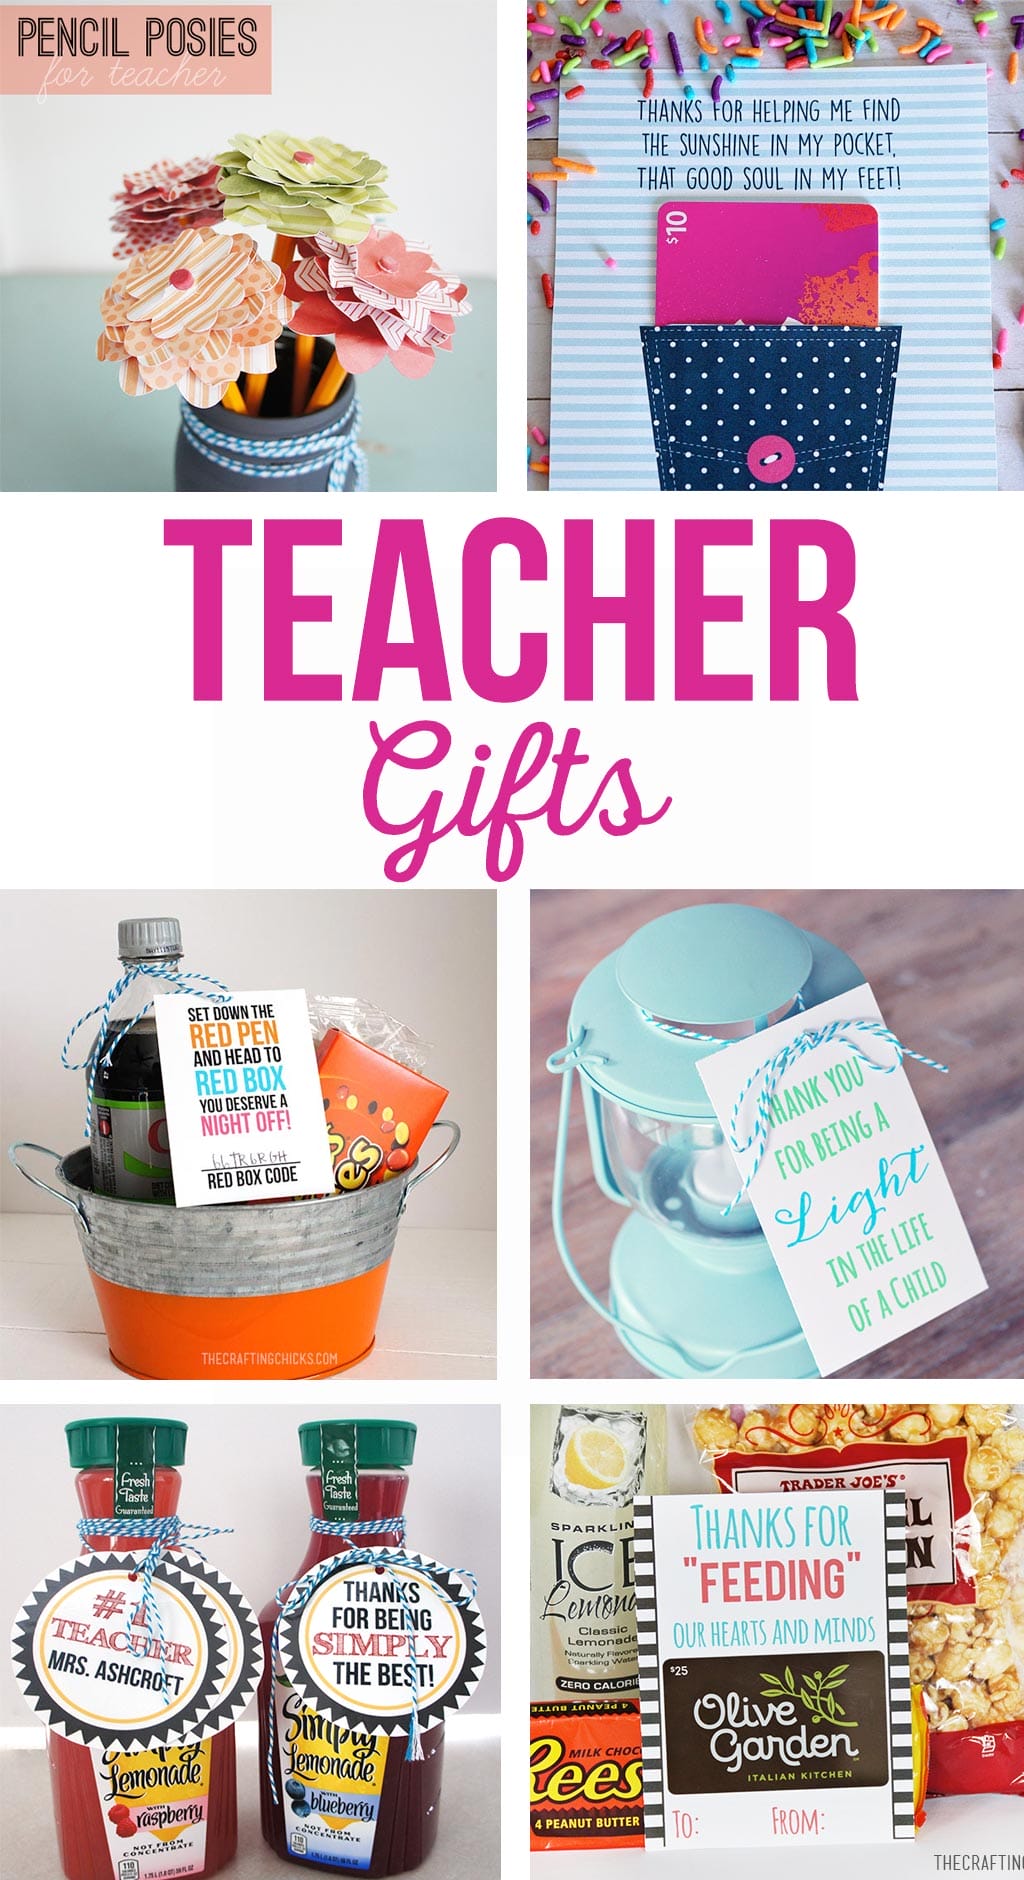 5 Easy & Simple Teacher's Day Gift Ideas | Handmade Gifts for Teachers Day  | Teachers Day Gifts 2021 - YouTube